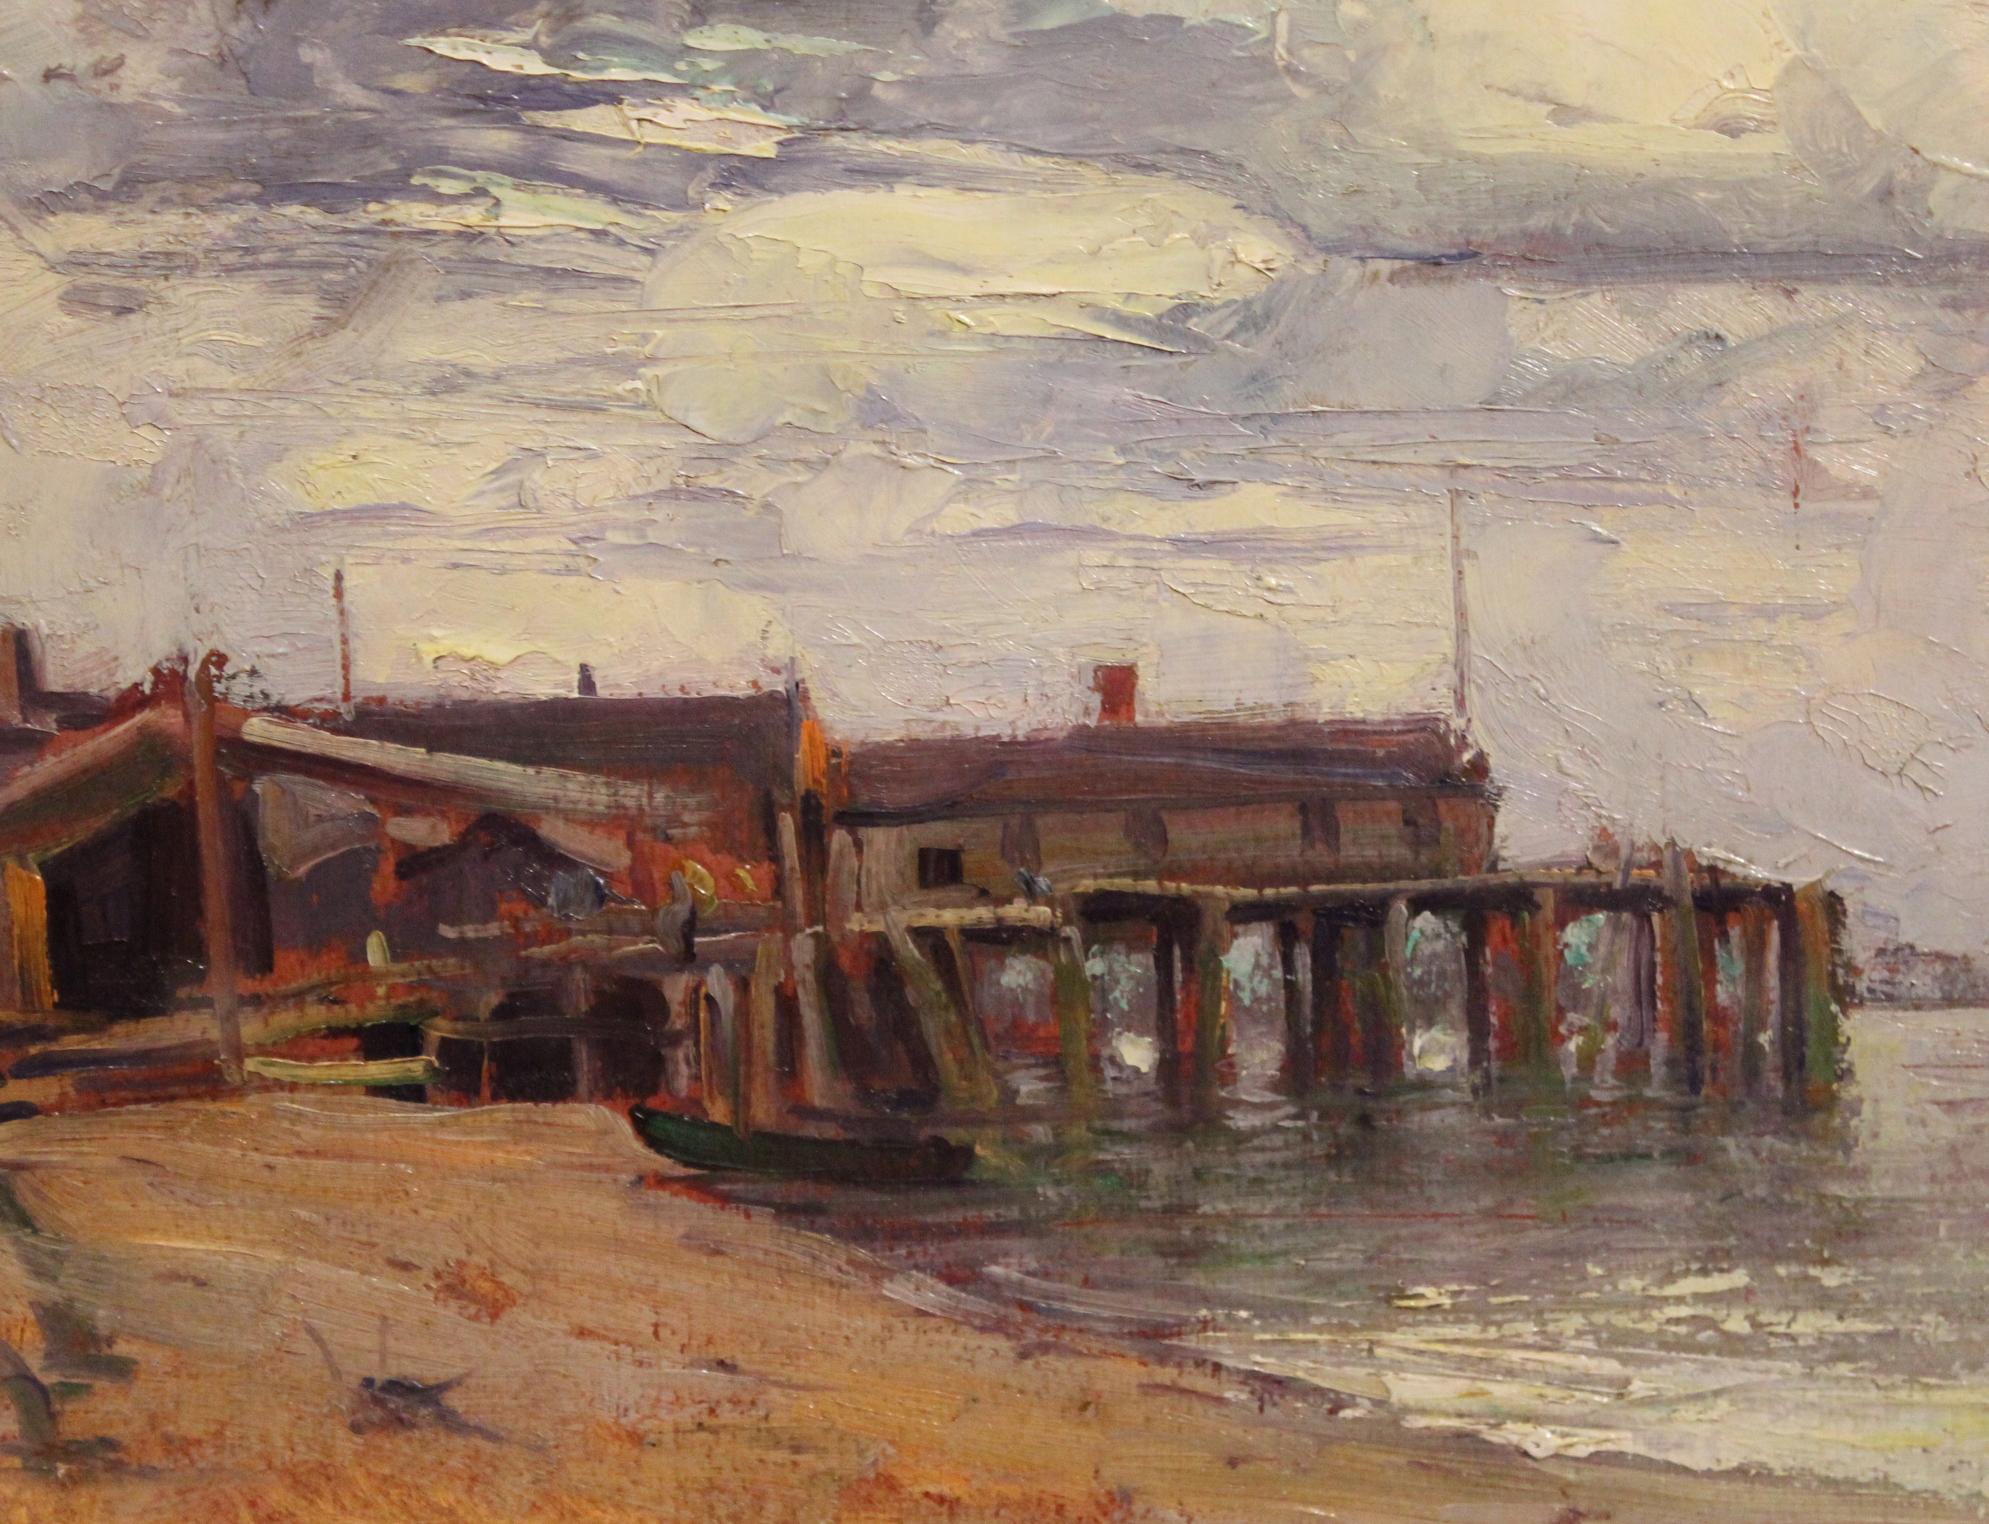 Dieses schöne Ölgemälde eines Docks in Provincetown auf Cape Cod stammt von dem amerikanischen Künstler Emile Albert Gruppe (1896-1978). Gruppe wurde in Rochester, NY, geboren und entwickelte sich zu einem bekannten Landschafts- und Marinemaler in